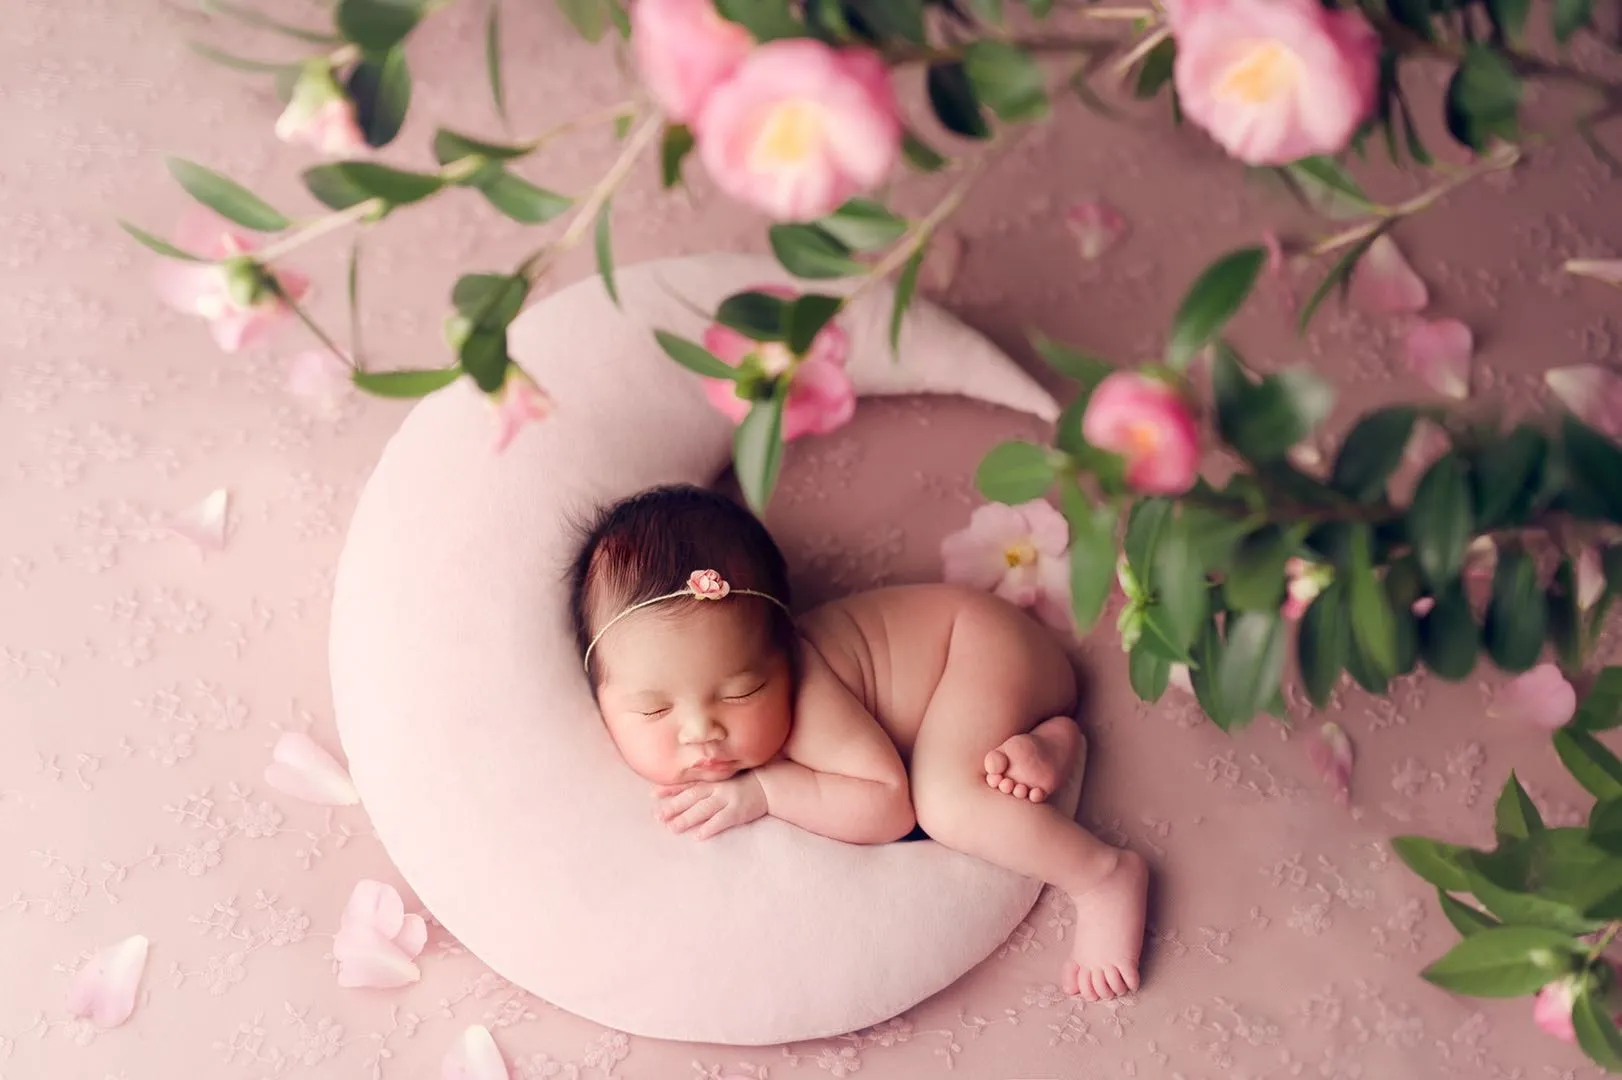 Новорожденный Подставки для фотографий луна-shape форме, благодаря чему создается ощущение невесомости с подушки с звездочек-Луна детские ак... от AliExpress WW